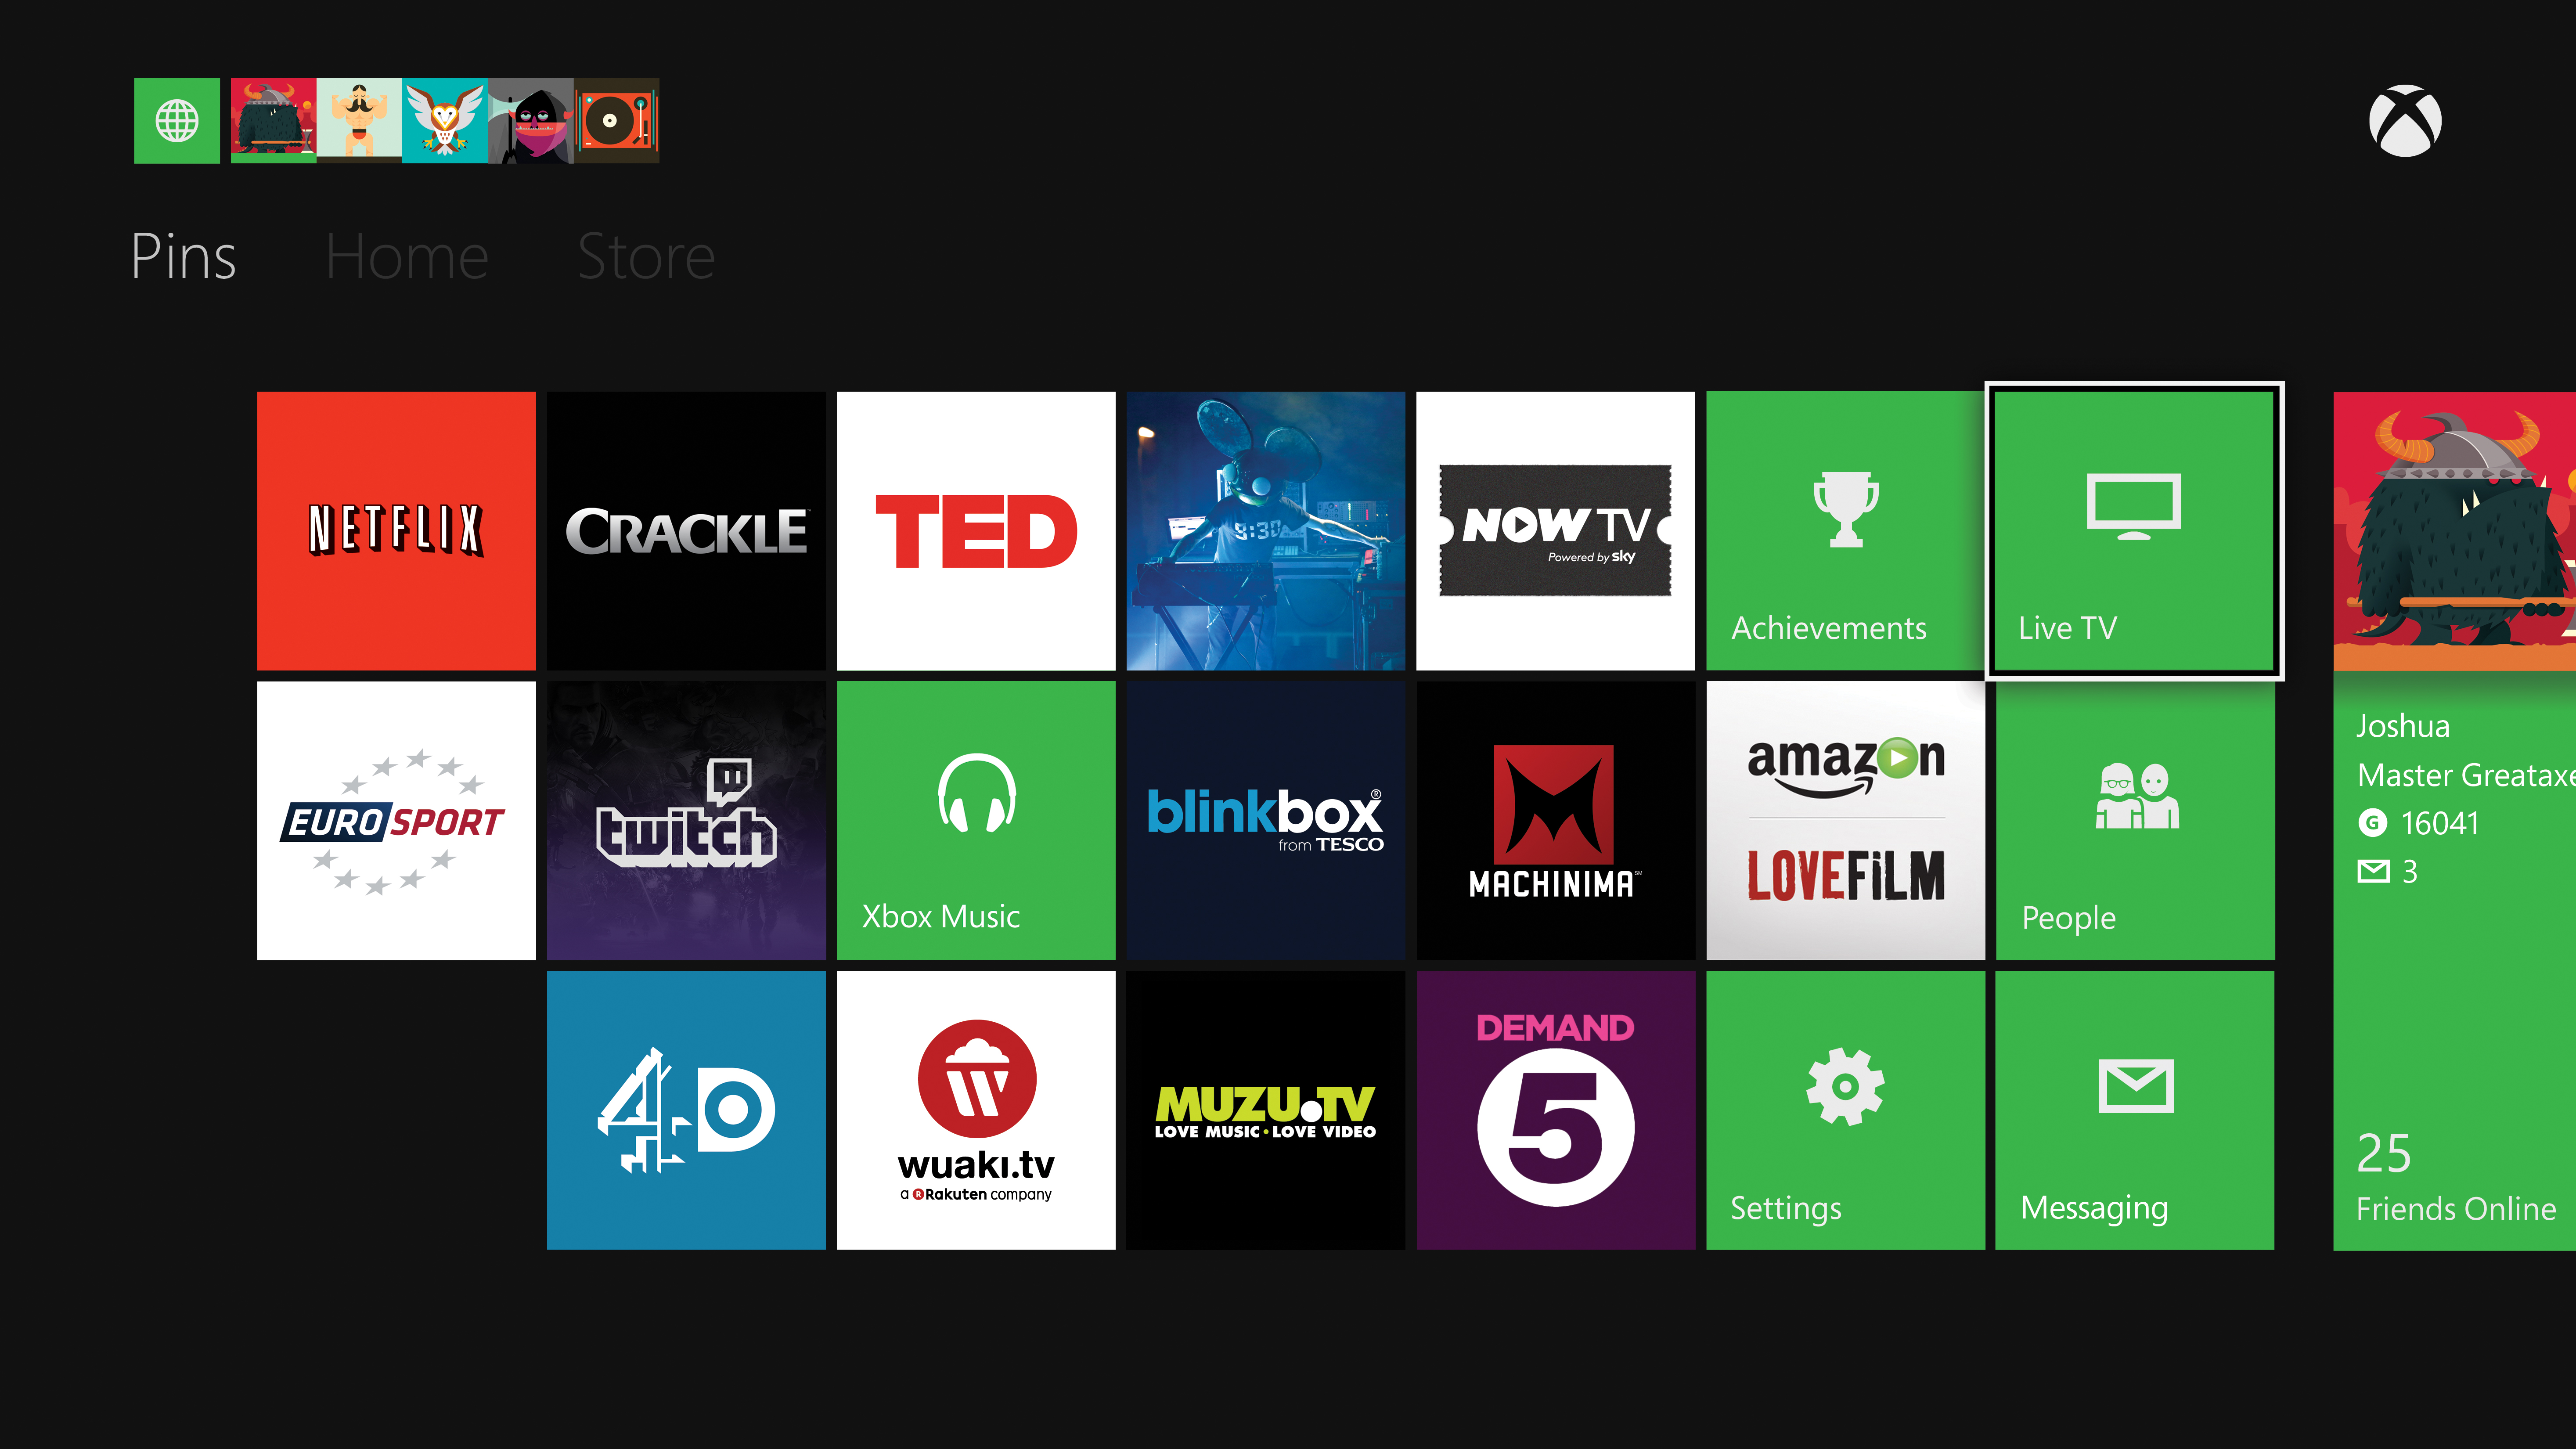 oortelefoon Wiskunde evolutie Sky's Now TV Xbox One app delayed 'til summer, no immediate plans for Sky  Go | TechRadar